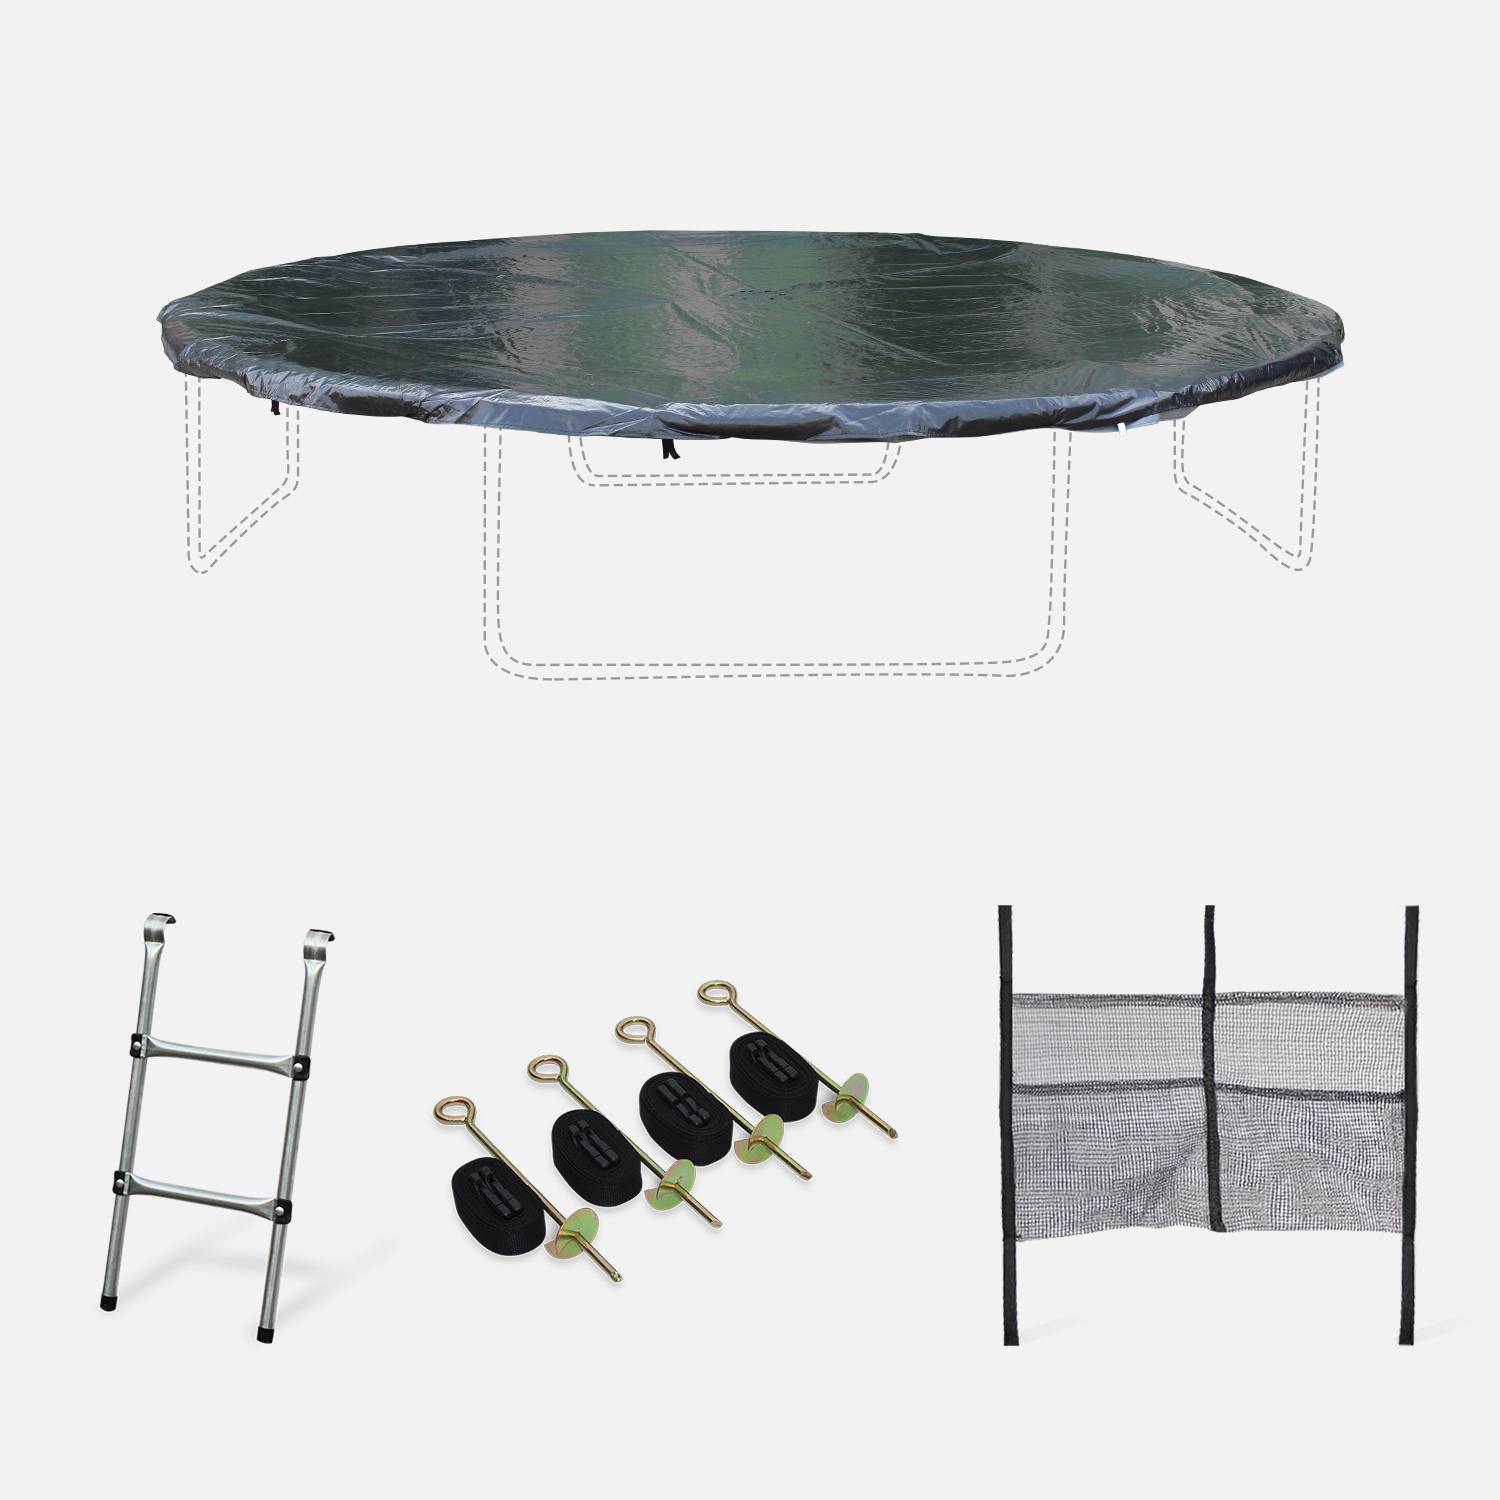 Pakket met accessoires voor trampoline Ø430cm Vénus, Venus Inner en Verseau met een ladder, een beschermhoes, een opbergnet voor schoenen en een verankeringskit Photo1